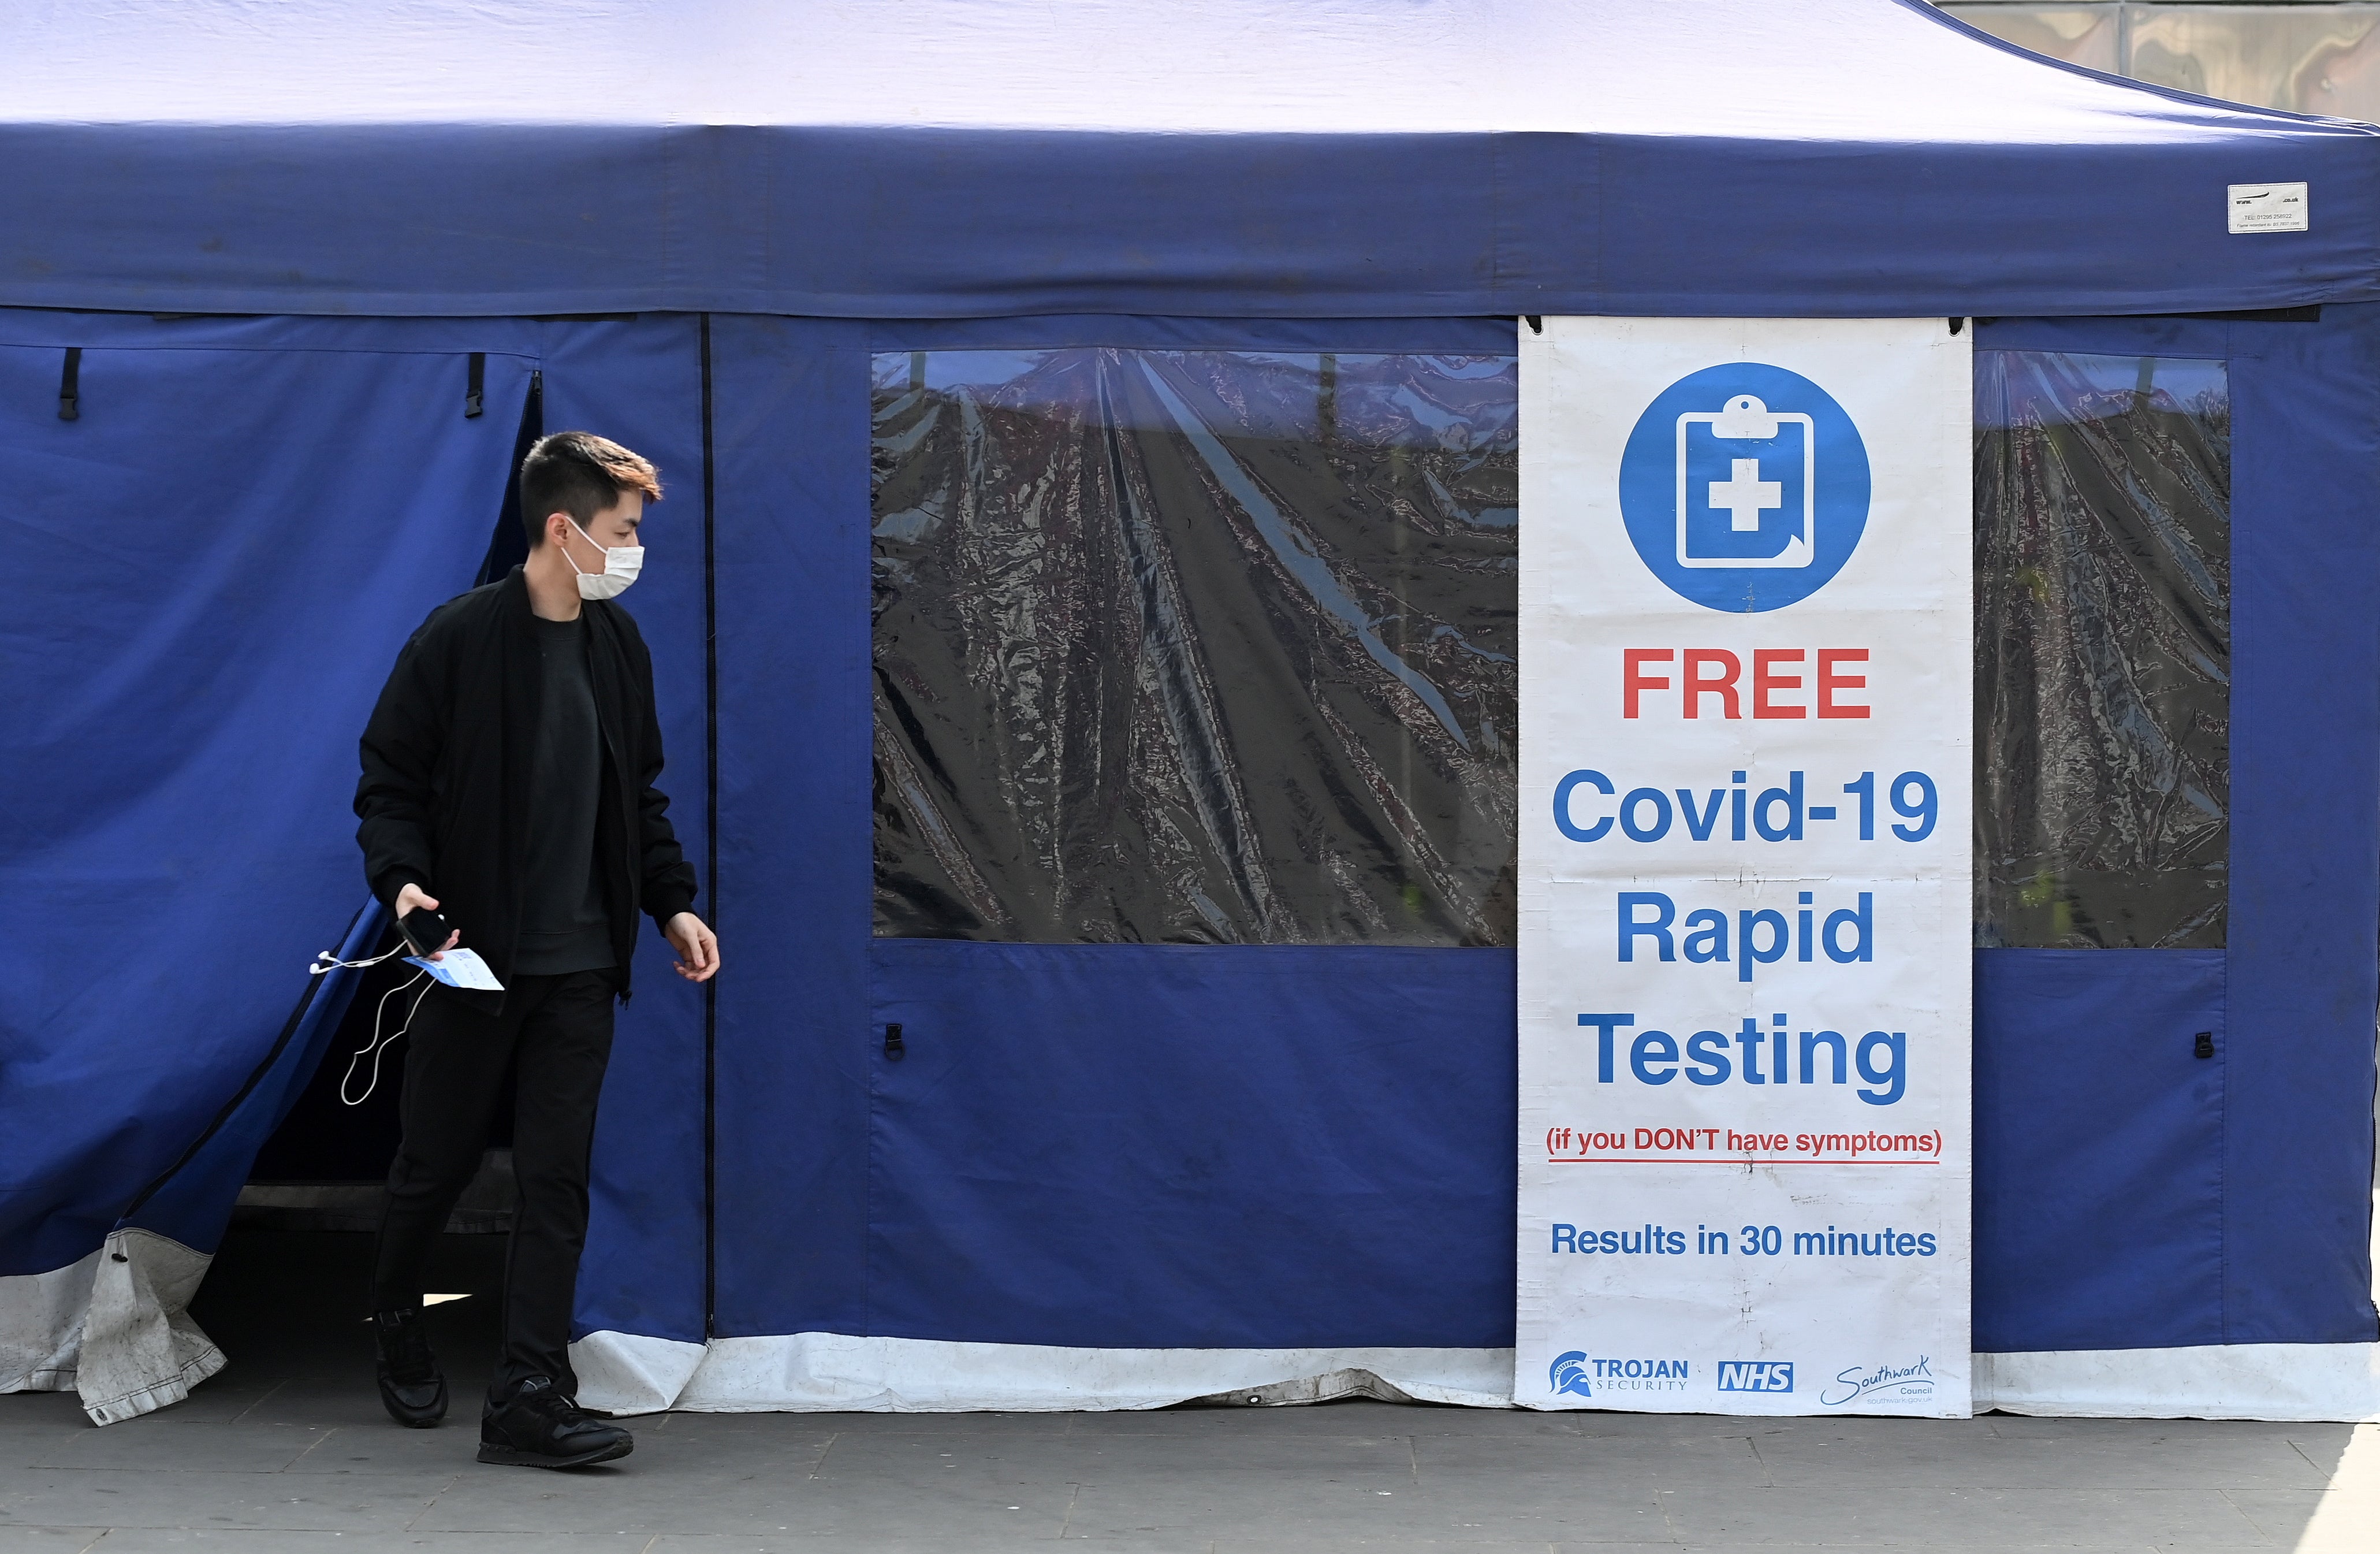 El gobierno británico va a poner fin a las pruebas de covid-19 el 1 de abril, a pesar de que los casos de covid siguen siendo elevados y van en aumento